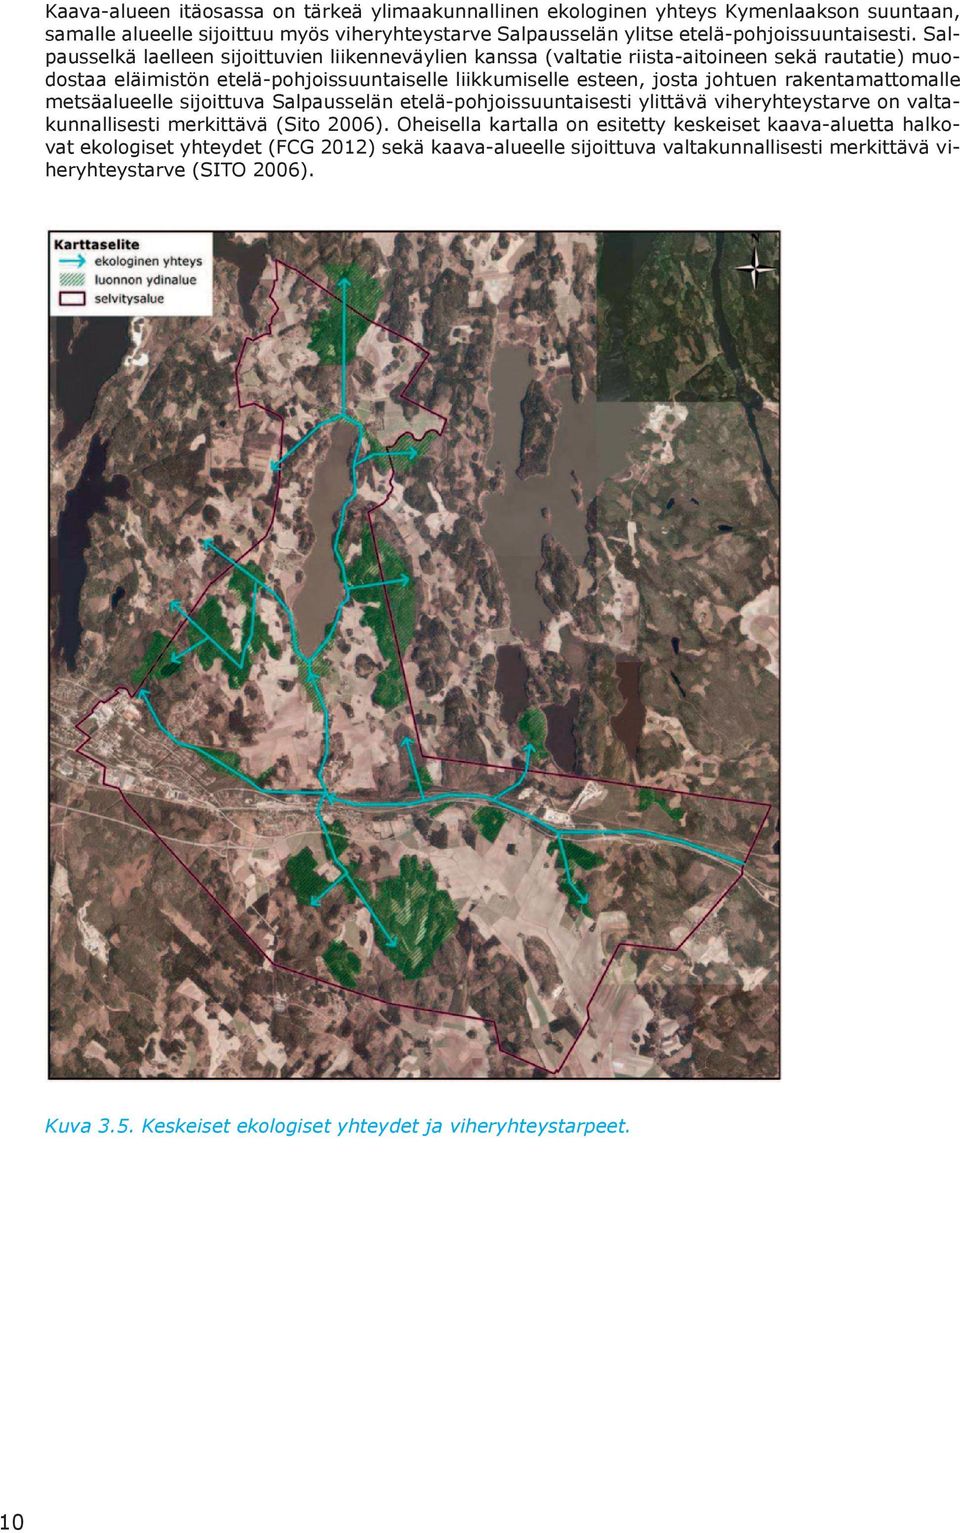 rakentamattomalle metsäalueelle sijoittuva Salpausselän etelä-pohjoissuuntaisesti ylittävä viheryhteystarve on valtakunnallisesti merkittävä (Sito 2006).